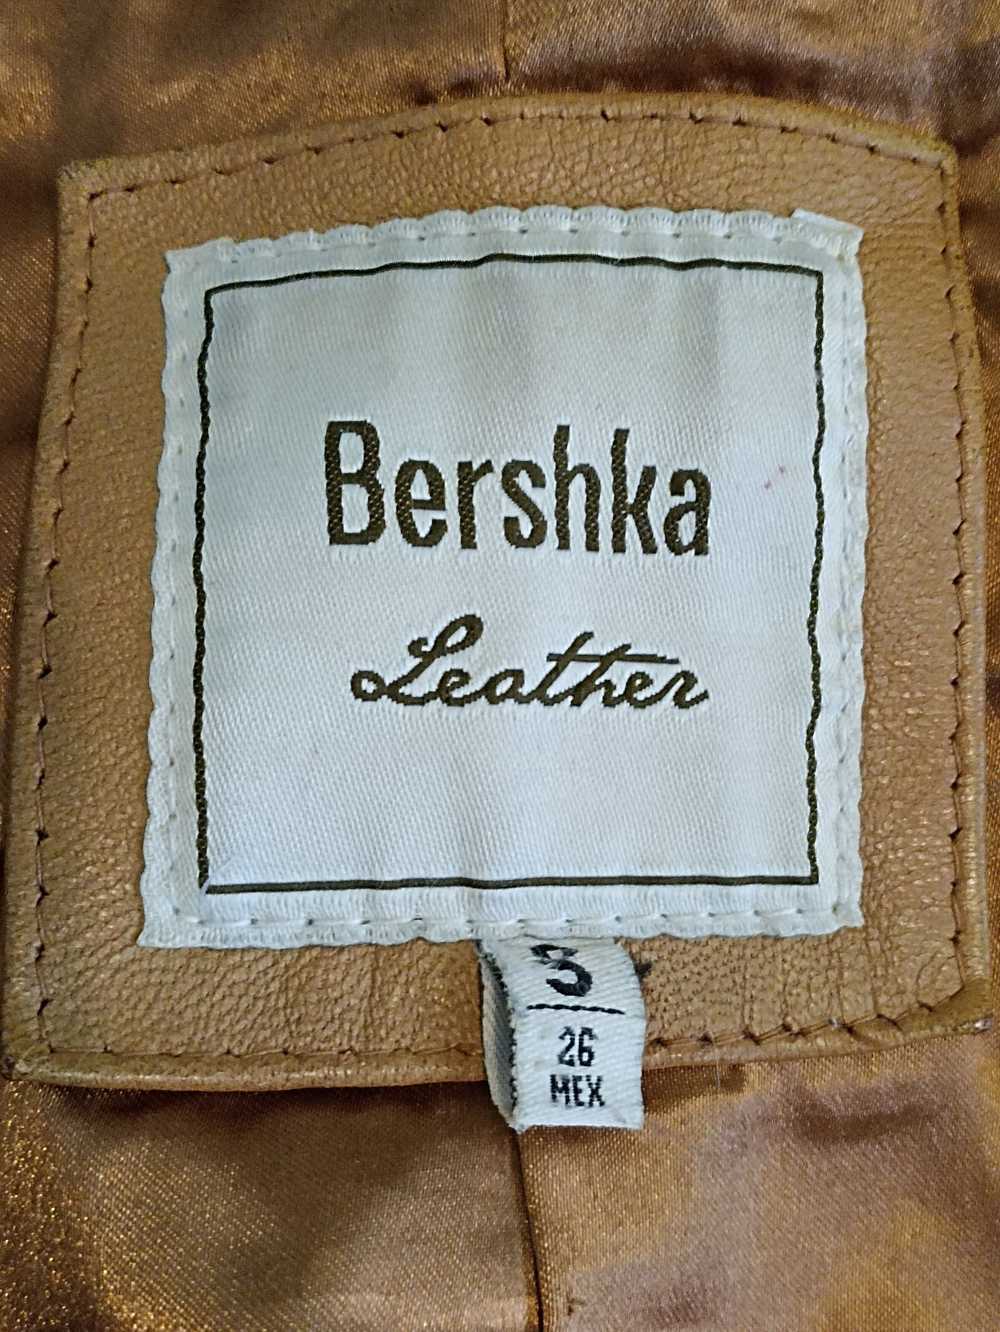 Bershka Bershka vintage tan leather jacket - image 3